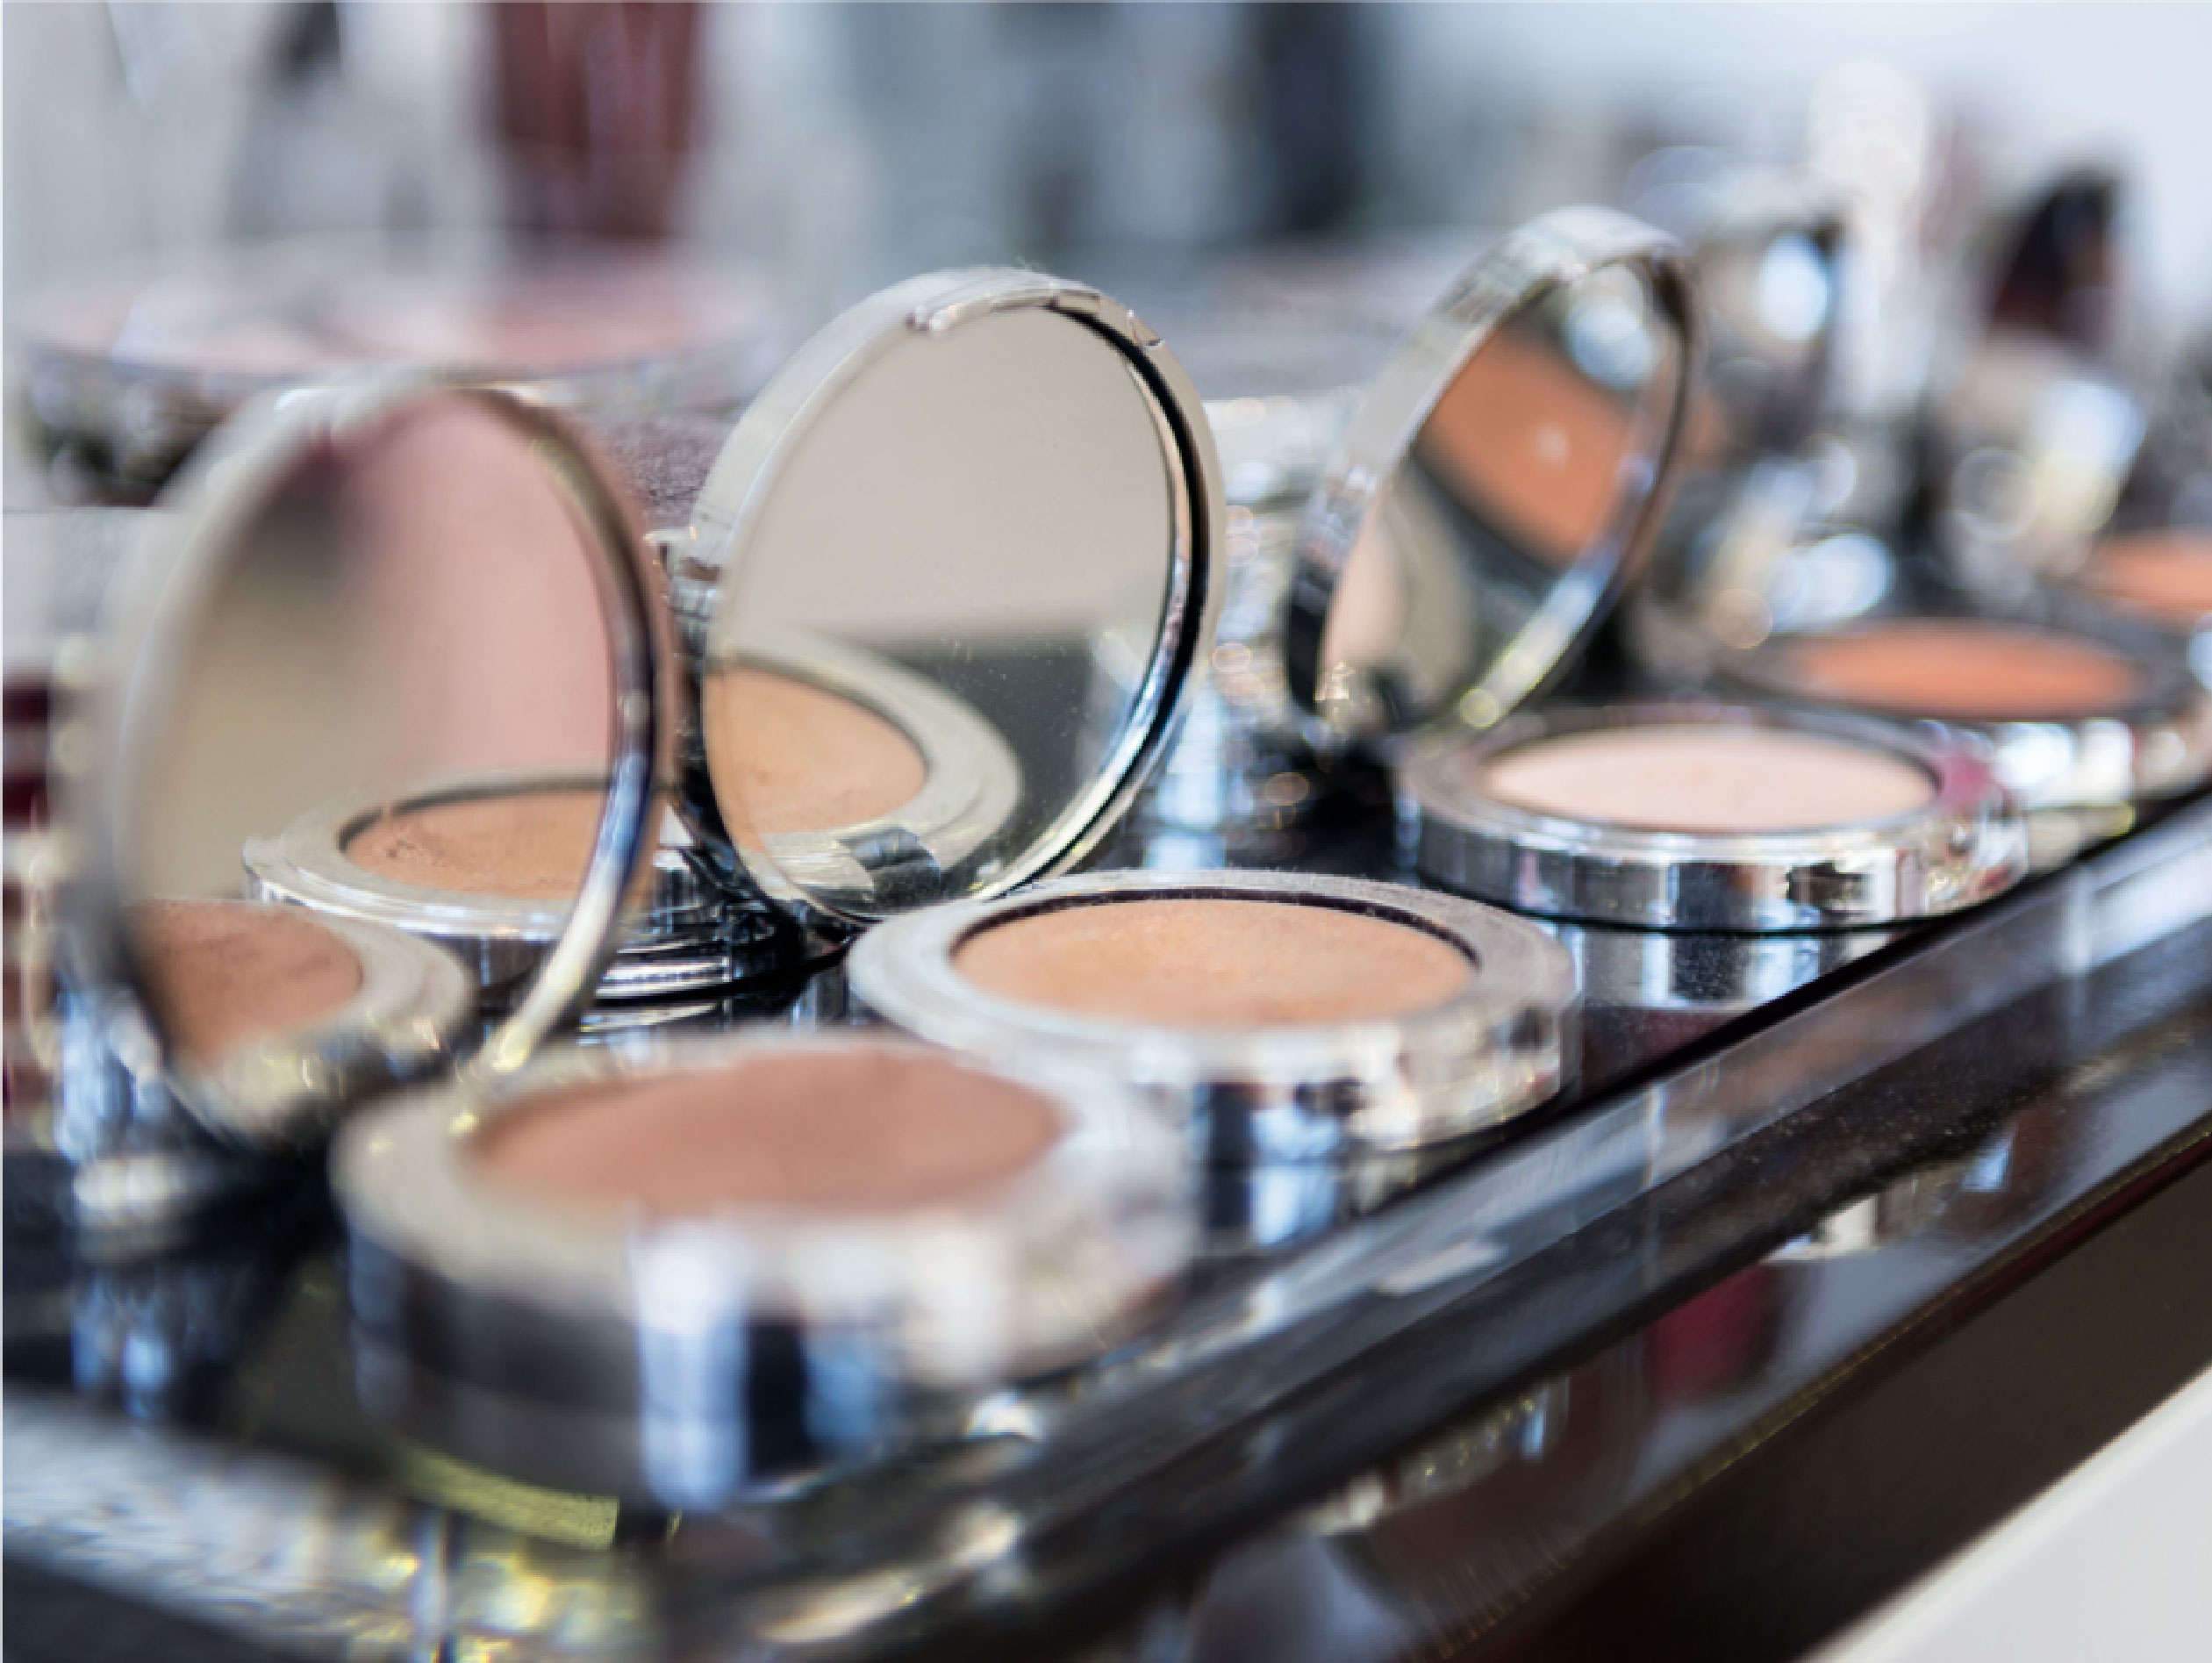 Cosmetics Companies Facing New Regulatory Oversight